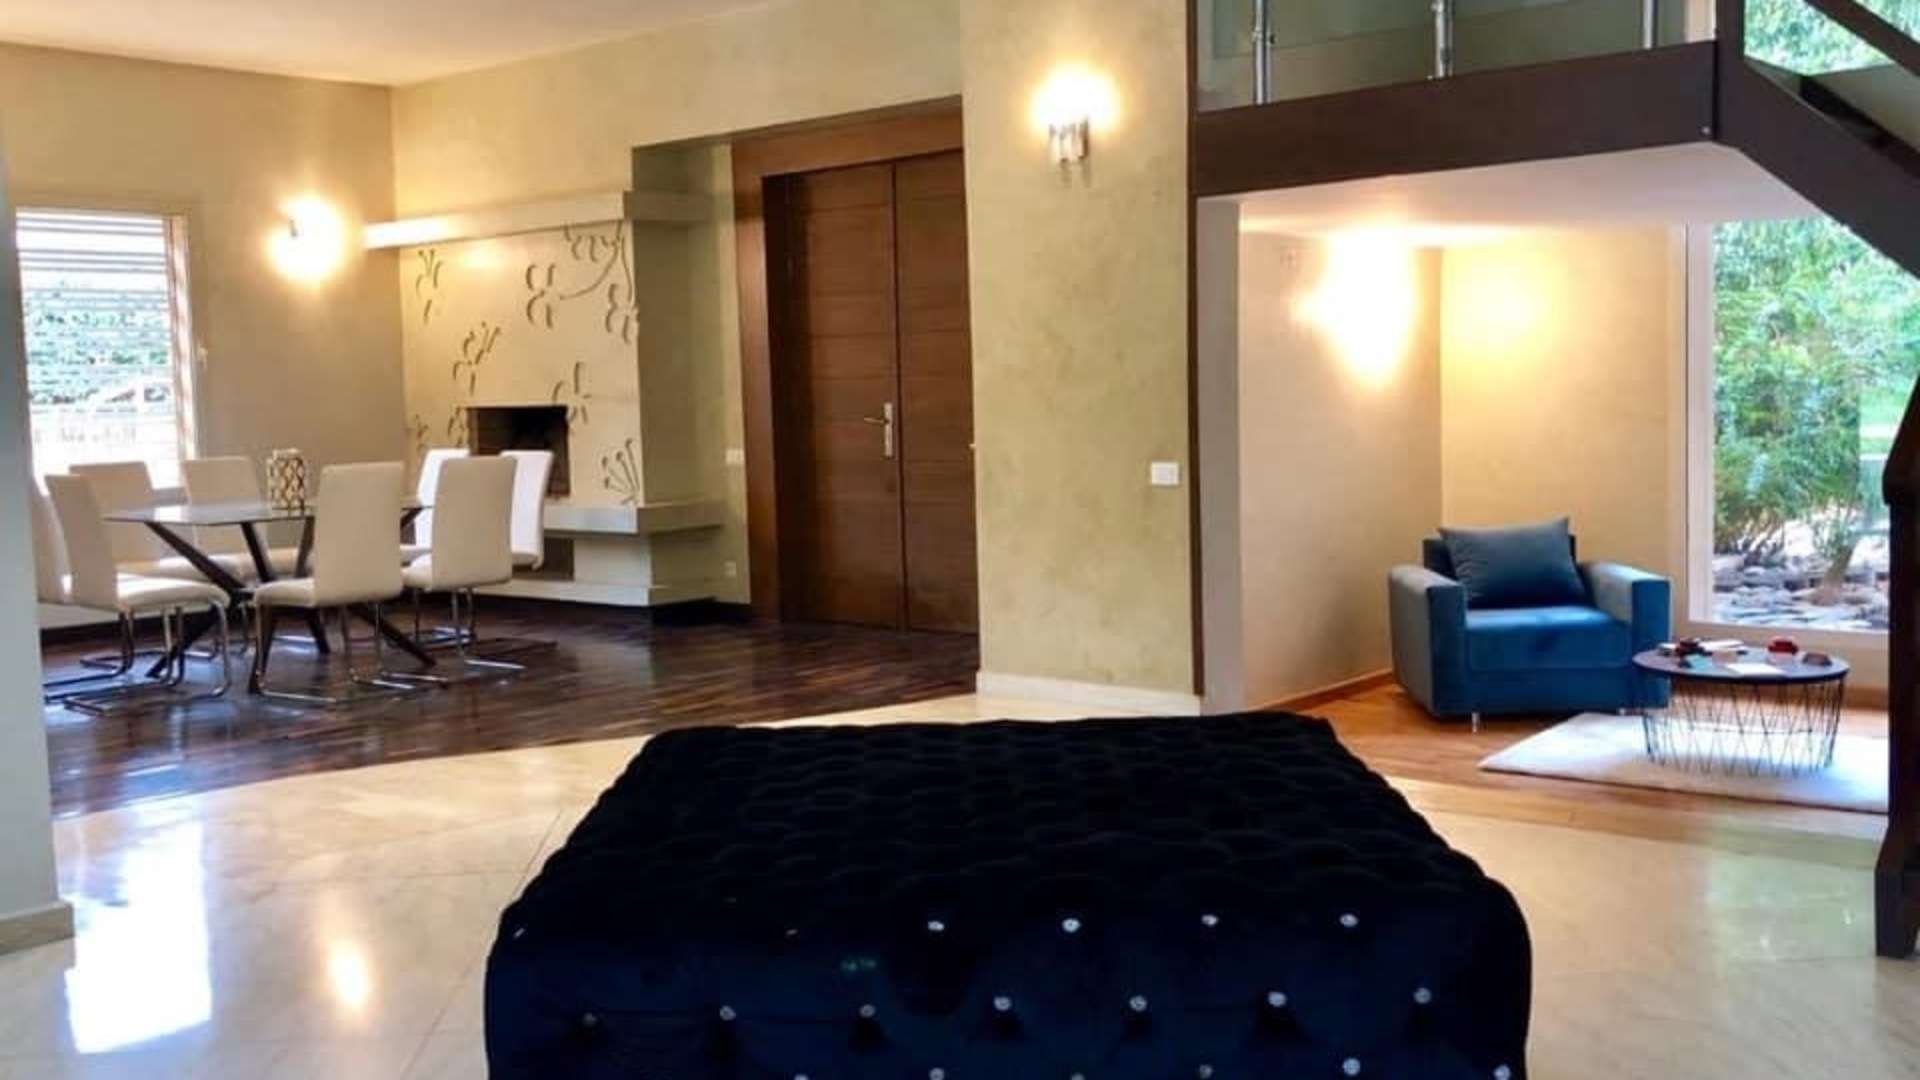 Location de vacances,Villa,Villa de charme de 5 suites idéalement située dans le quartier de l’Agdal à Marrakech ,Marrakech,Agdal